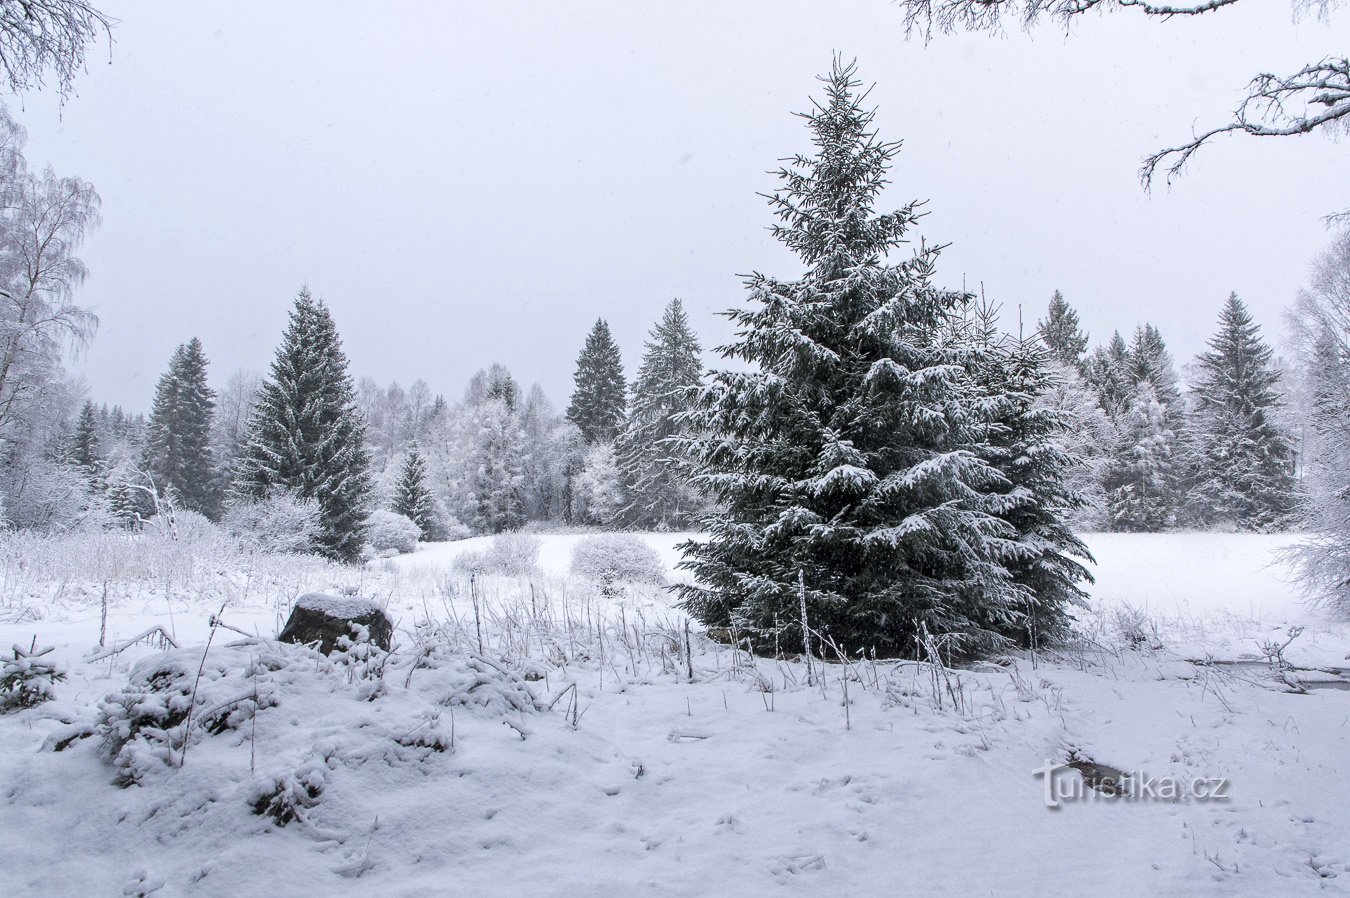 Semaine d'hiver à Šumava – Février 2020 pt. 2